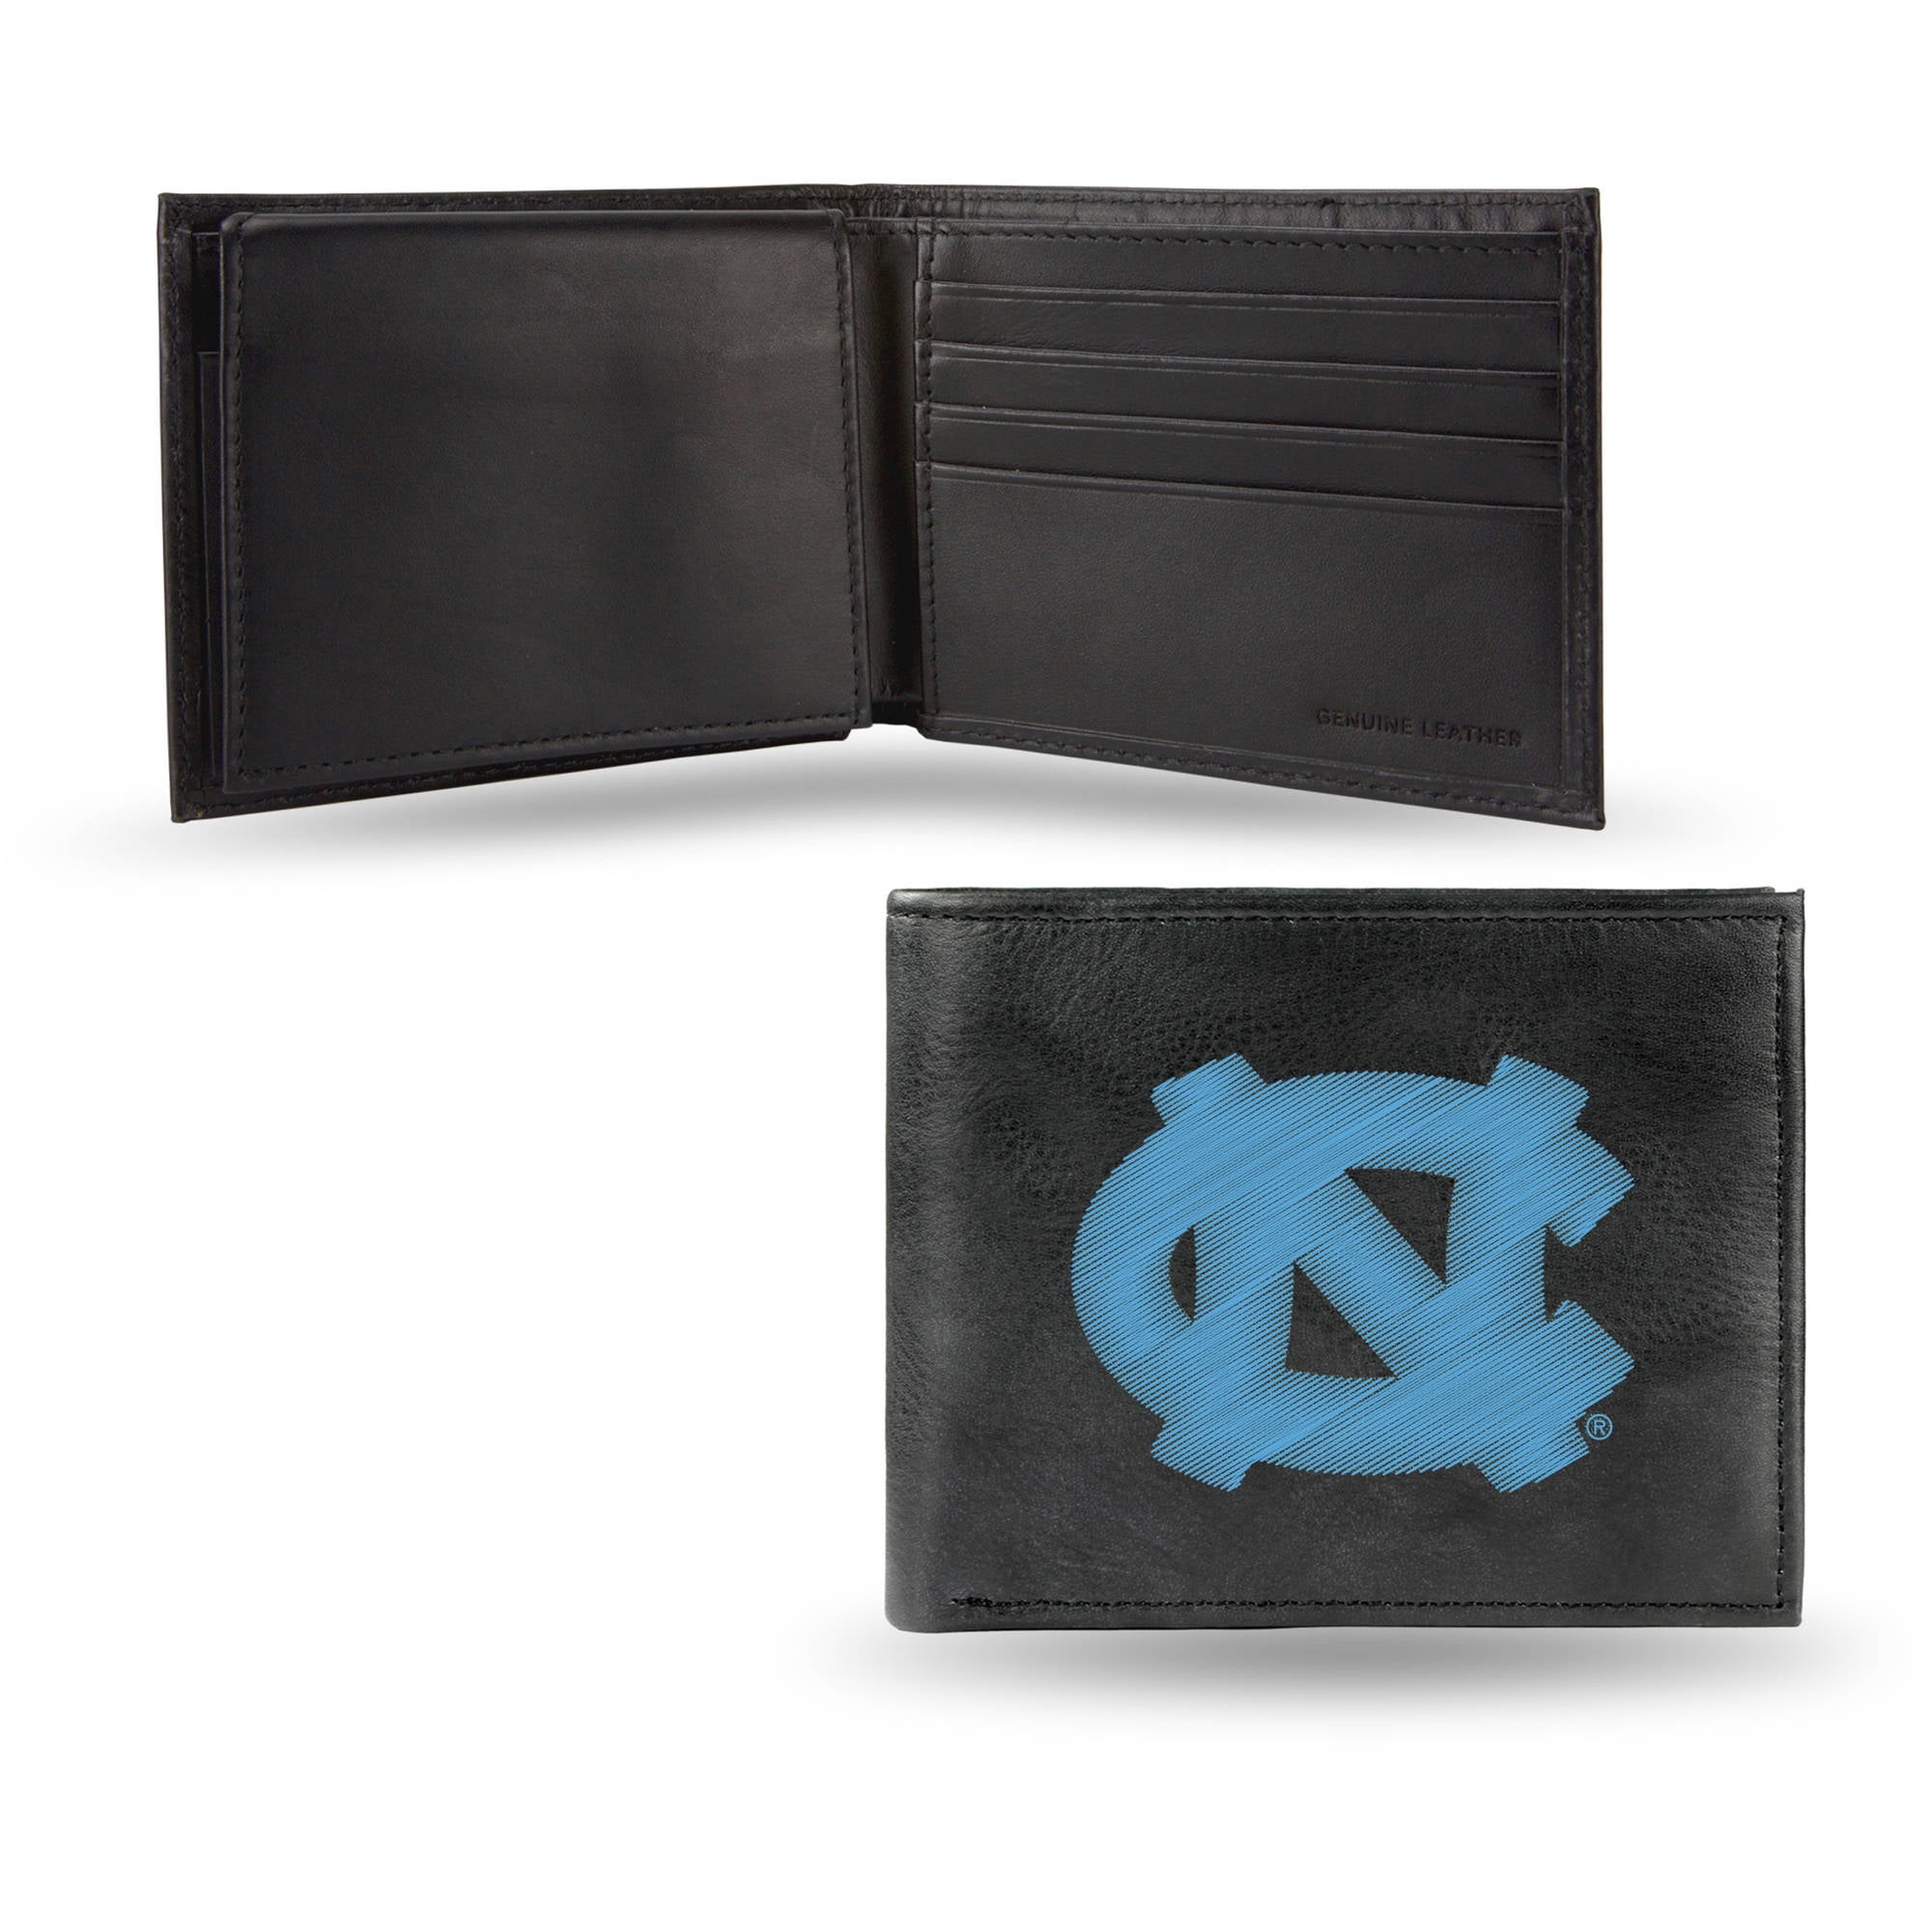 UNC Tar Heels Wallet Black Bifold Leather Carolina Wallet for Men by Shrunken Head 